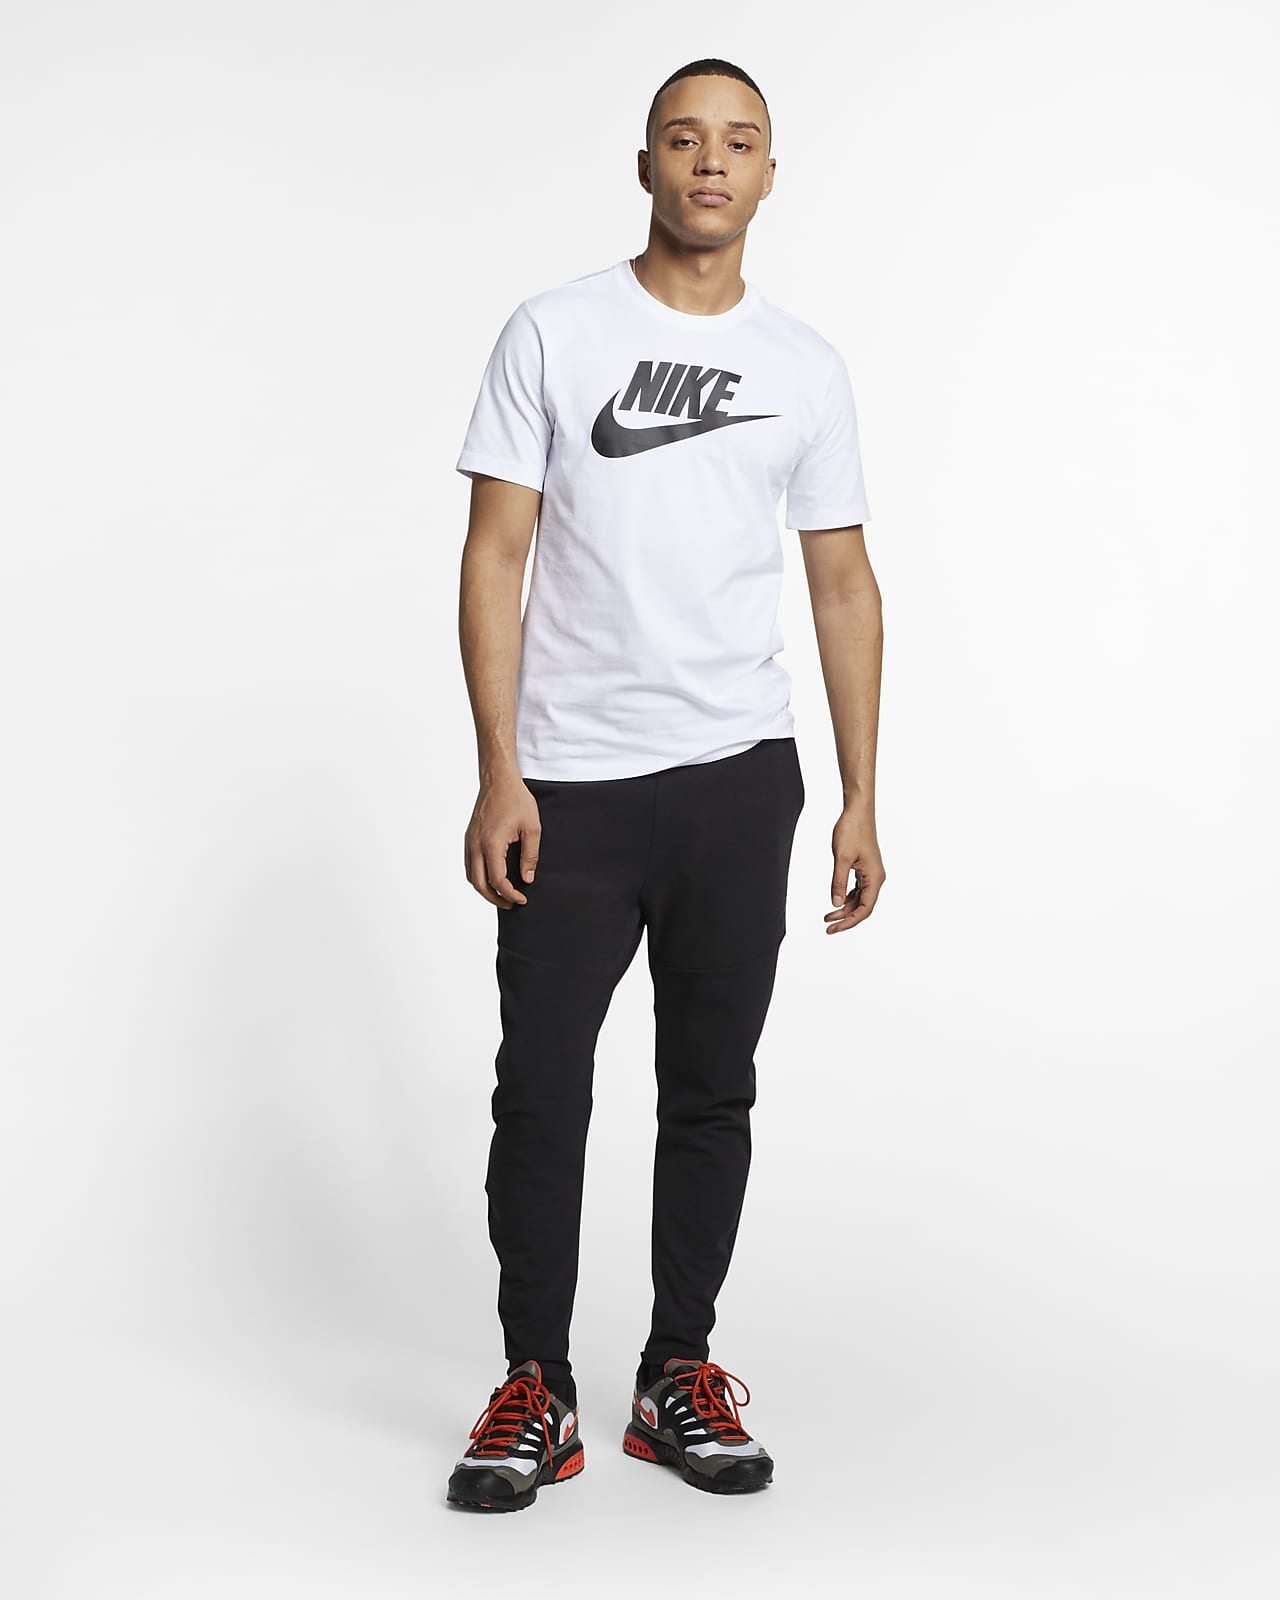 Antología en lugar dictador Nike Sportswear Men's T-Shirt. Nike ID